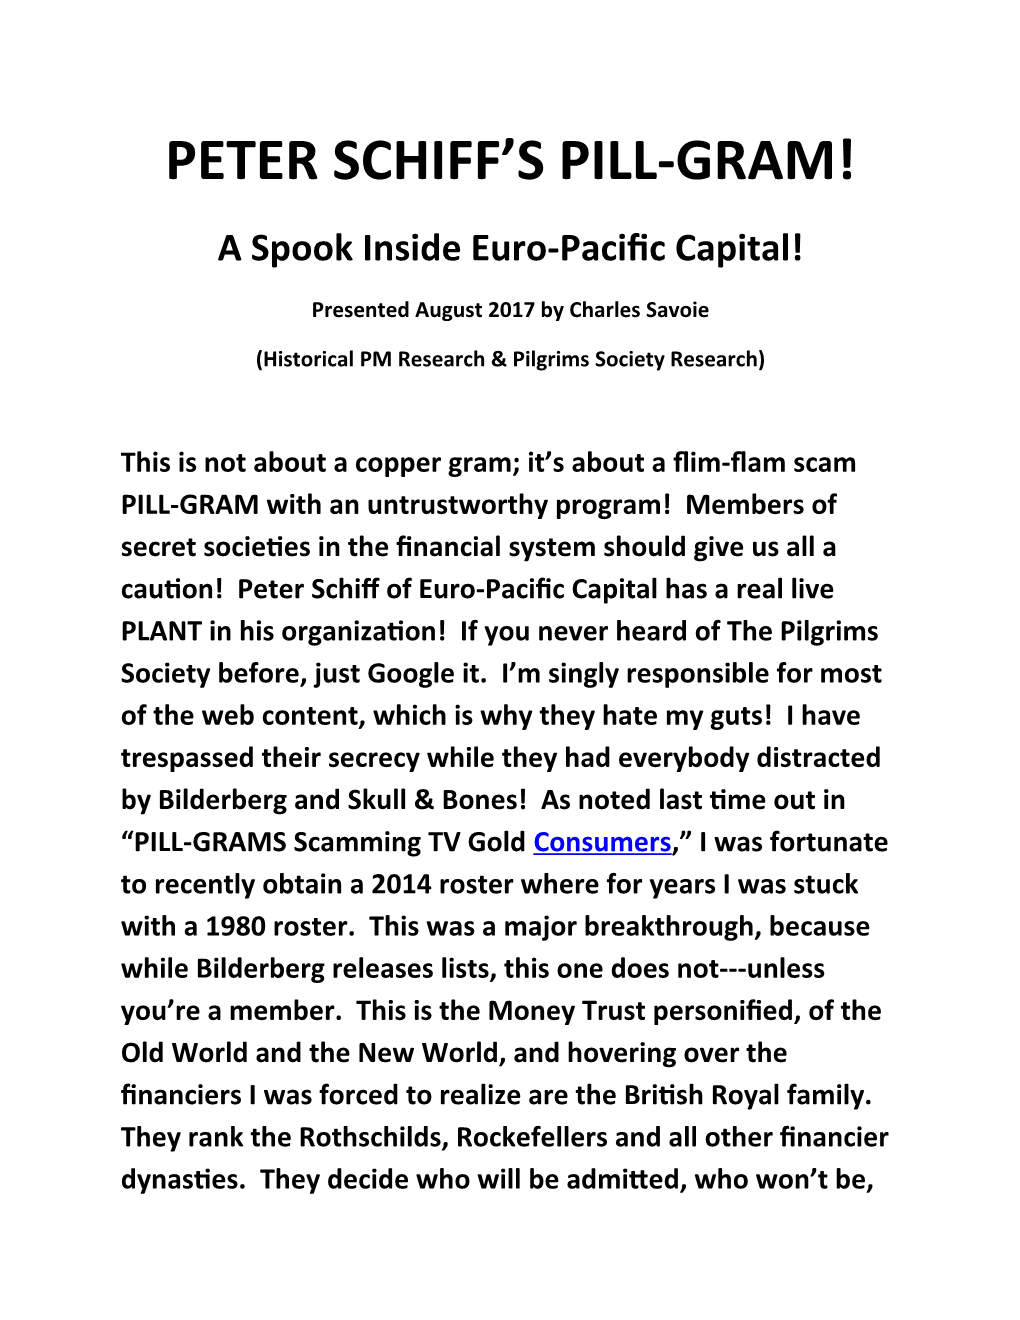 Peter Schiff's Pill-Gram!